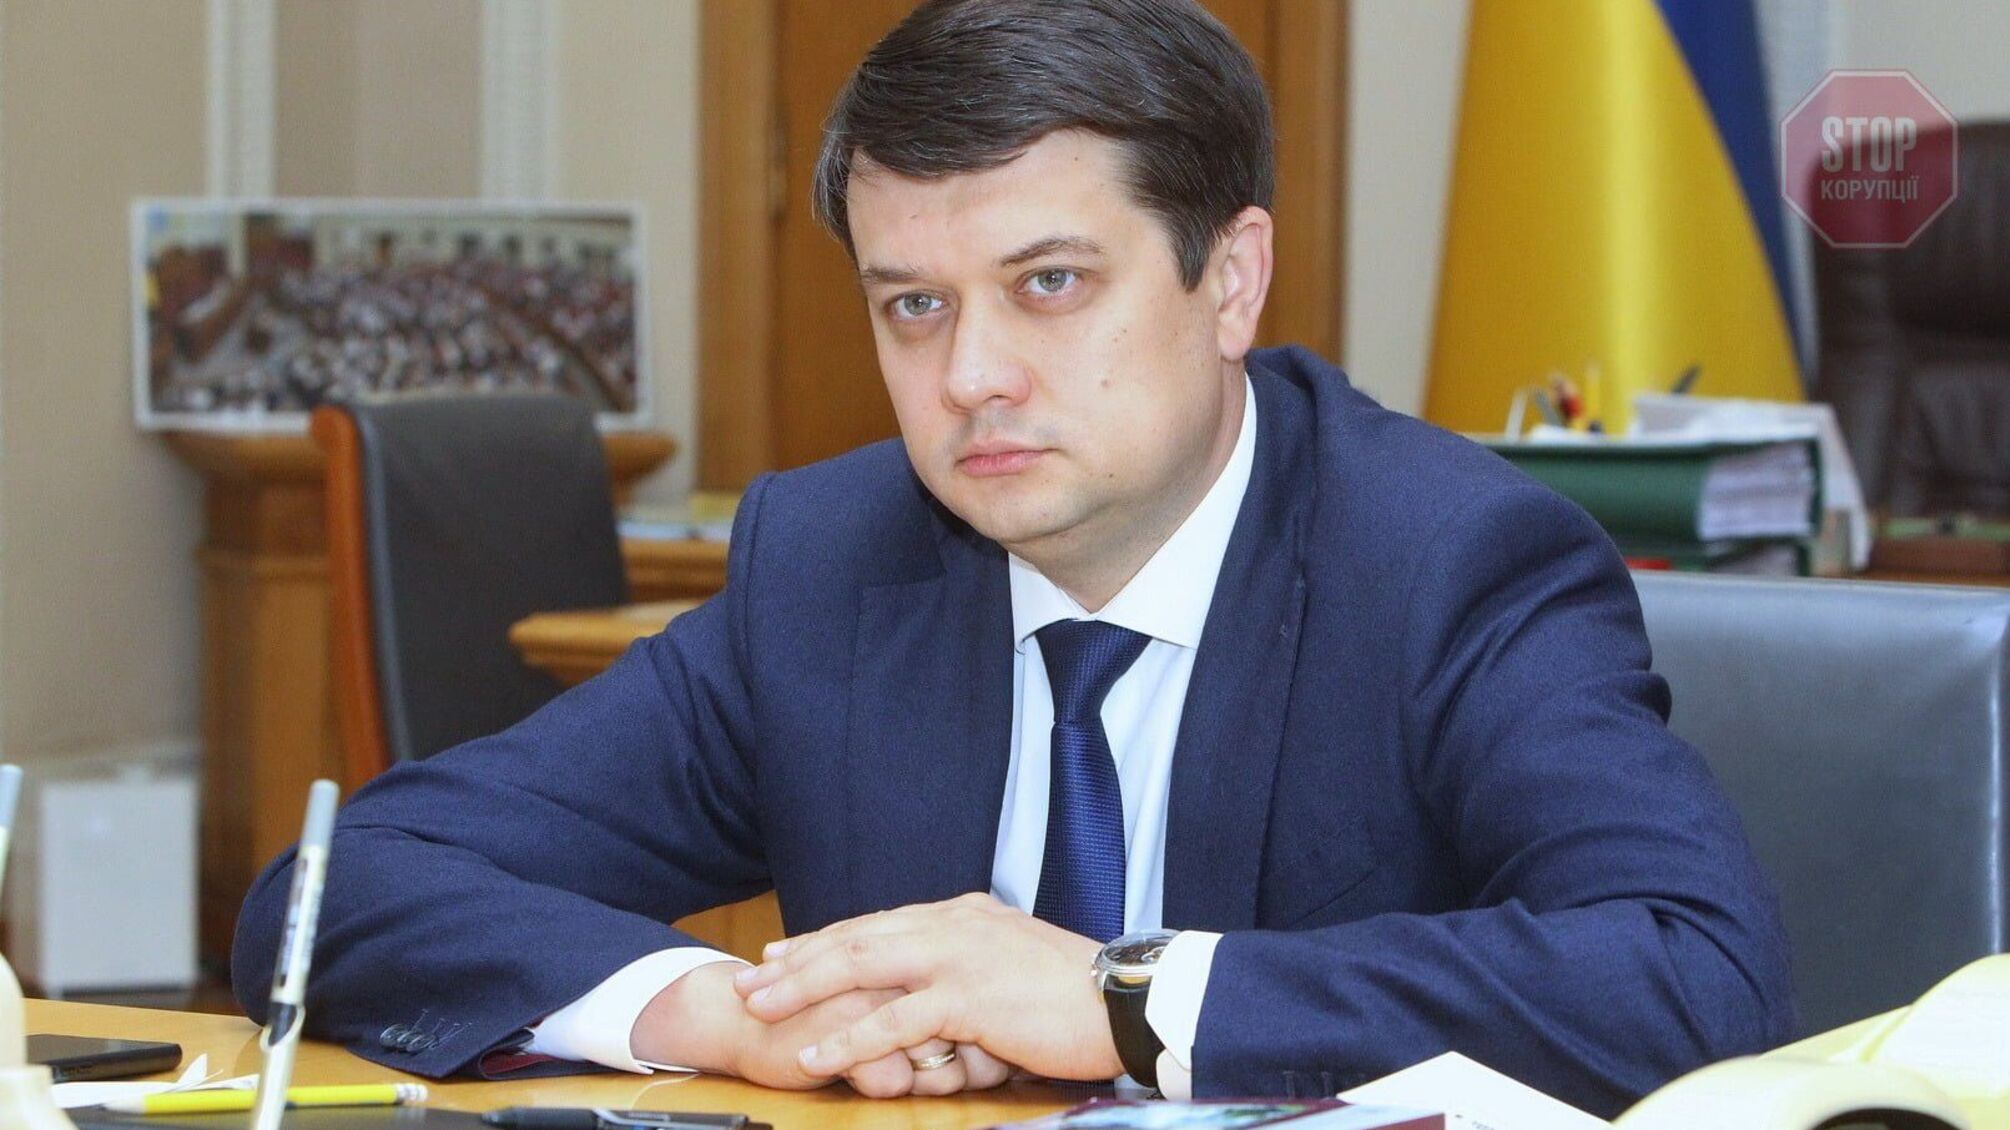 Разумков рассказал о дальнейших отставках министров